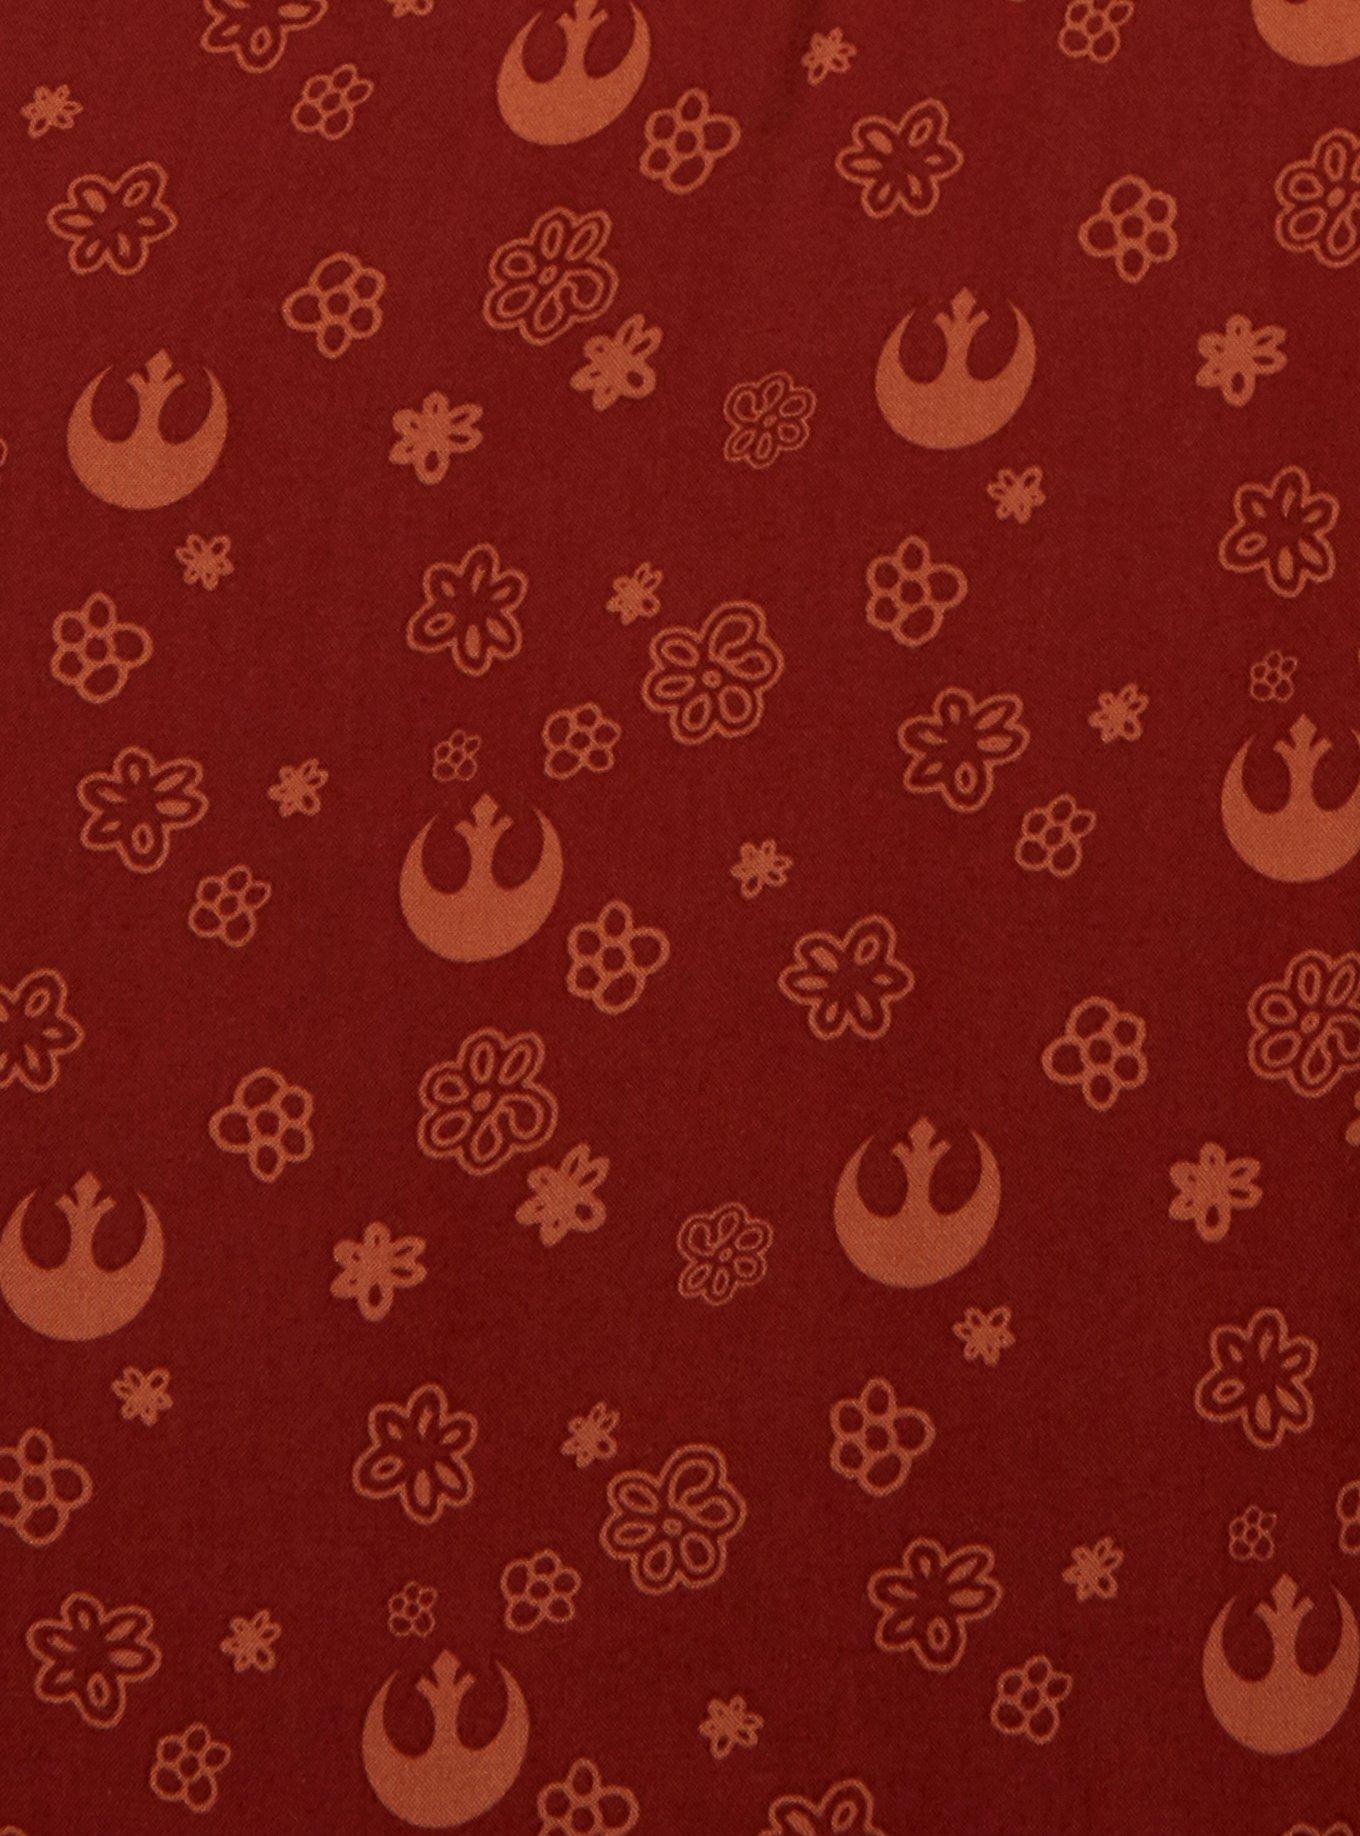 Her Universe Star Wars Rebellion Floral Allover Print Smock Dress, RED, alternate